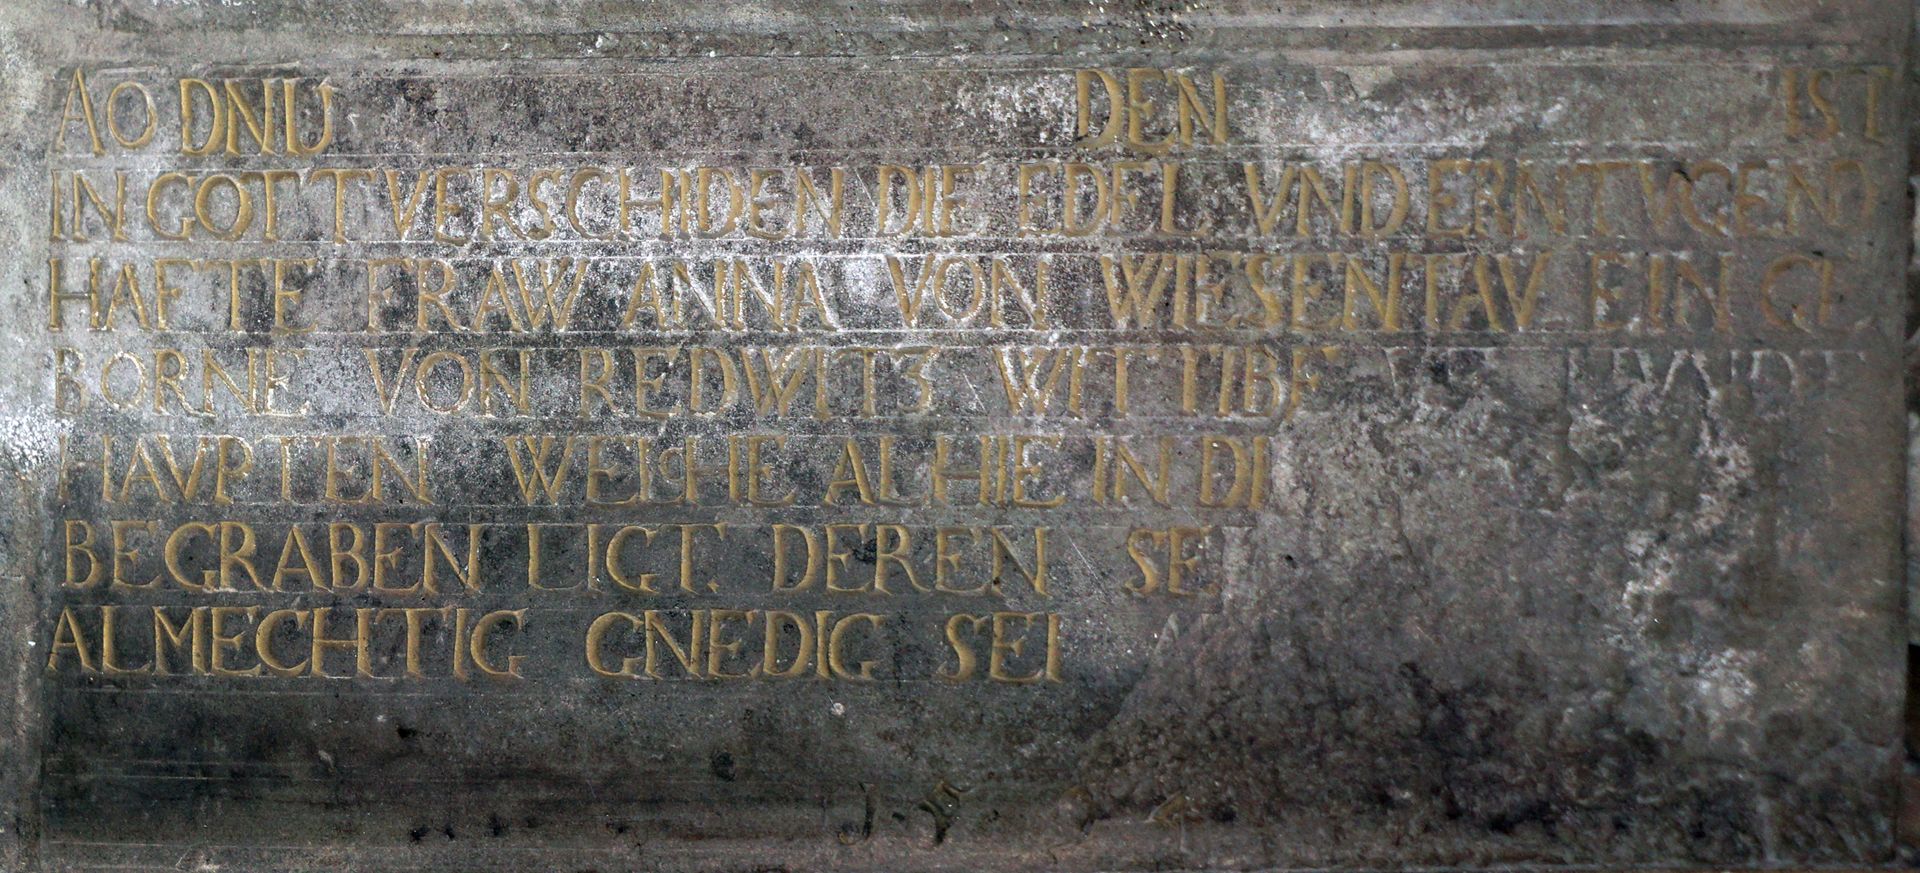 Grabdenkmal des Wilhelm von Wiesenthau und seiner Frau Anna rechte untere Inschrift